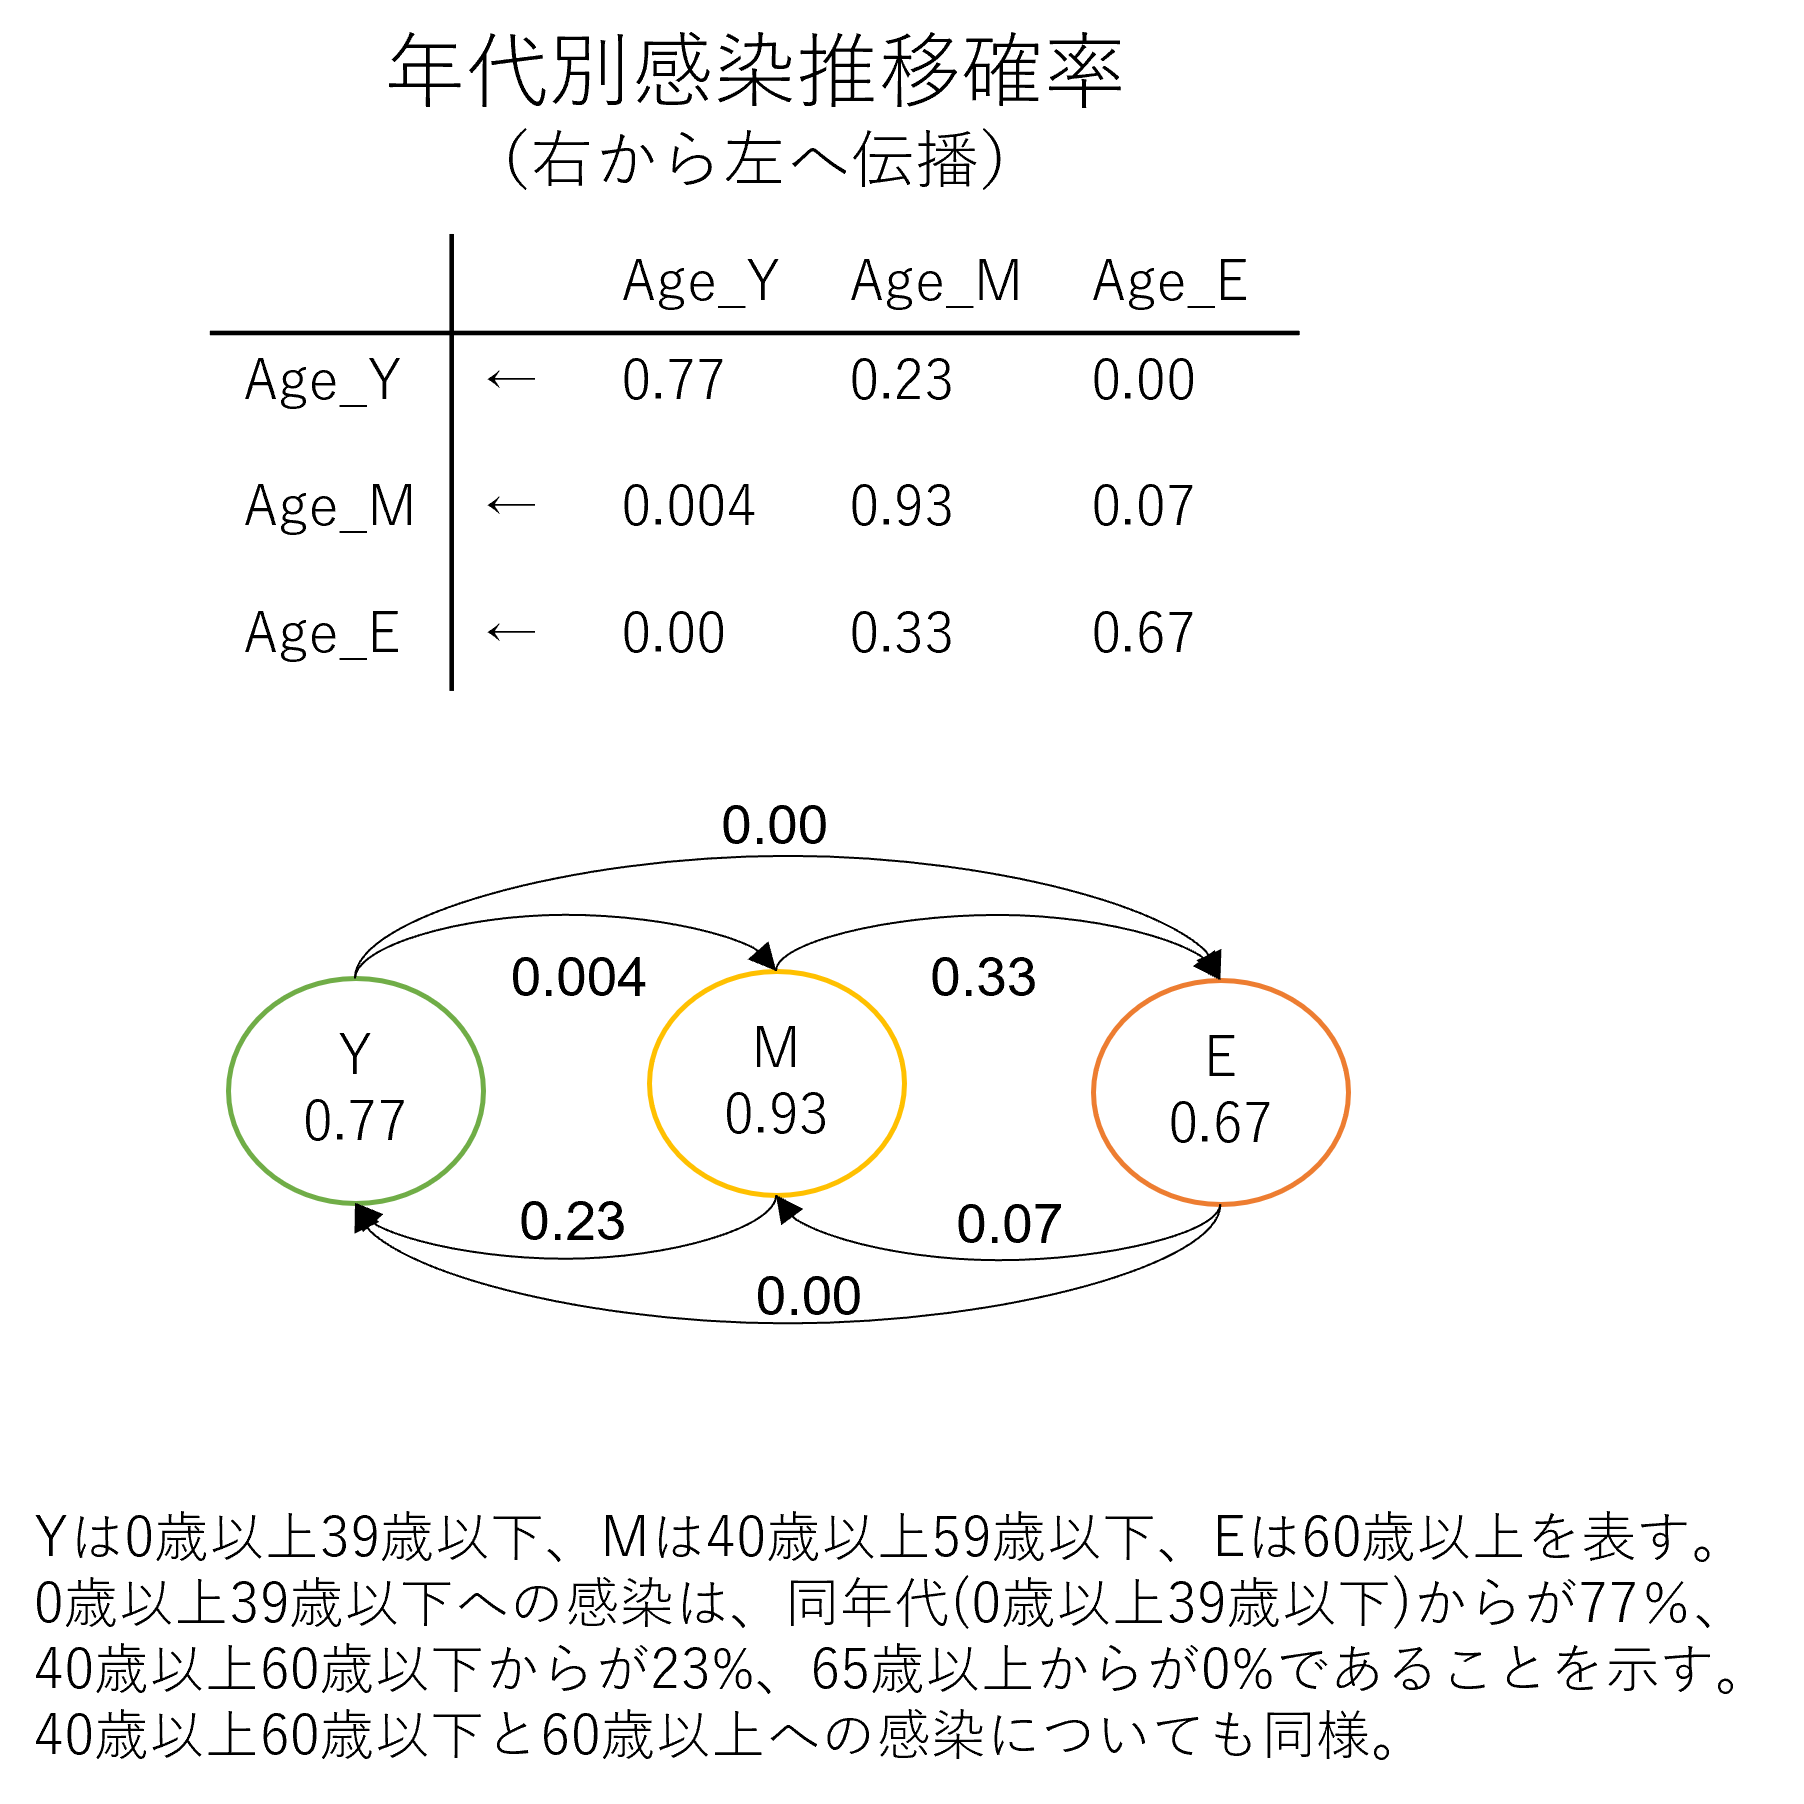 年代別感染推移確率（右から左へ伝播）